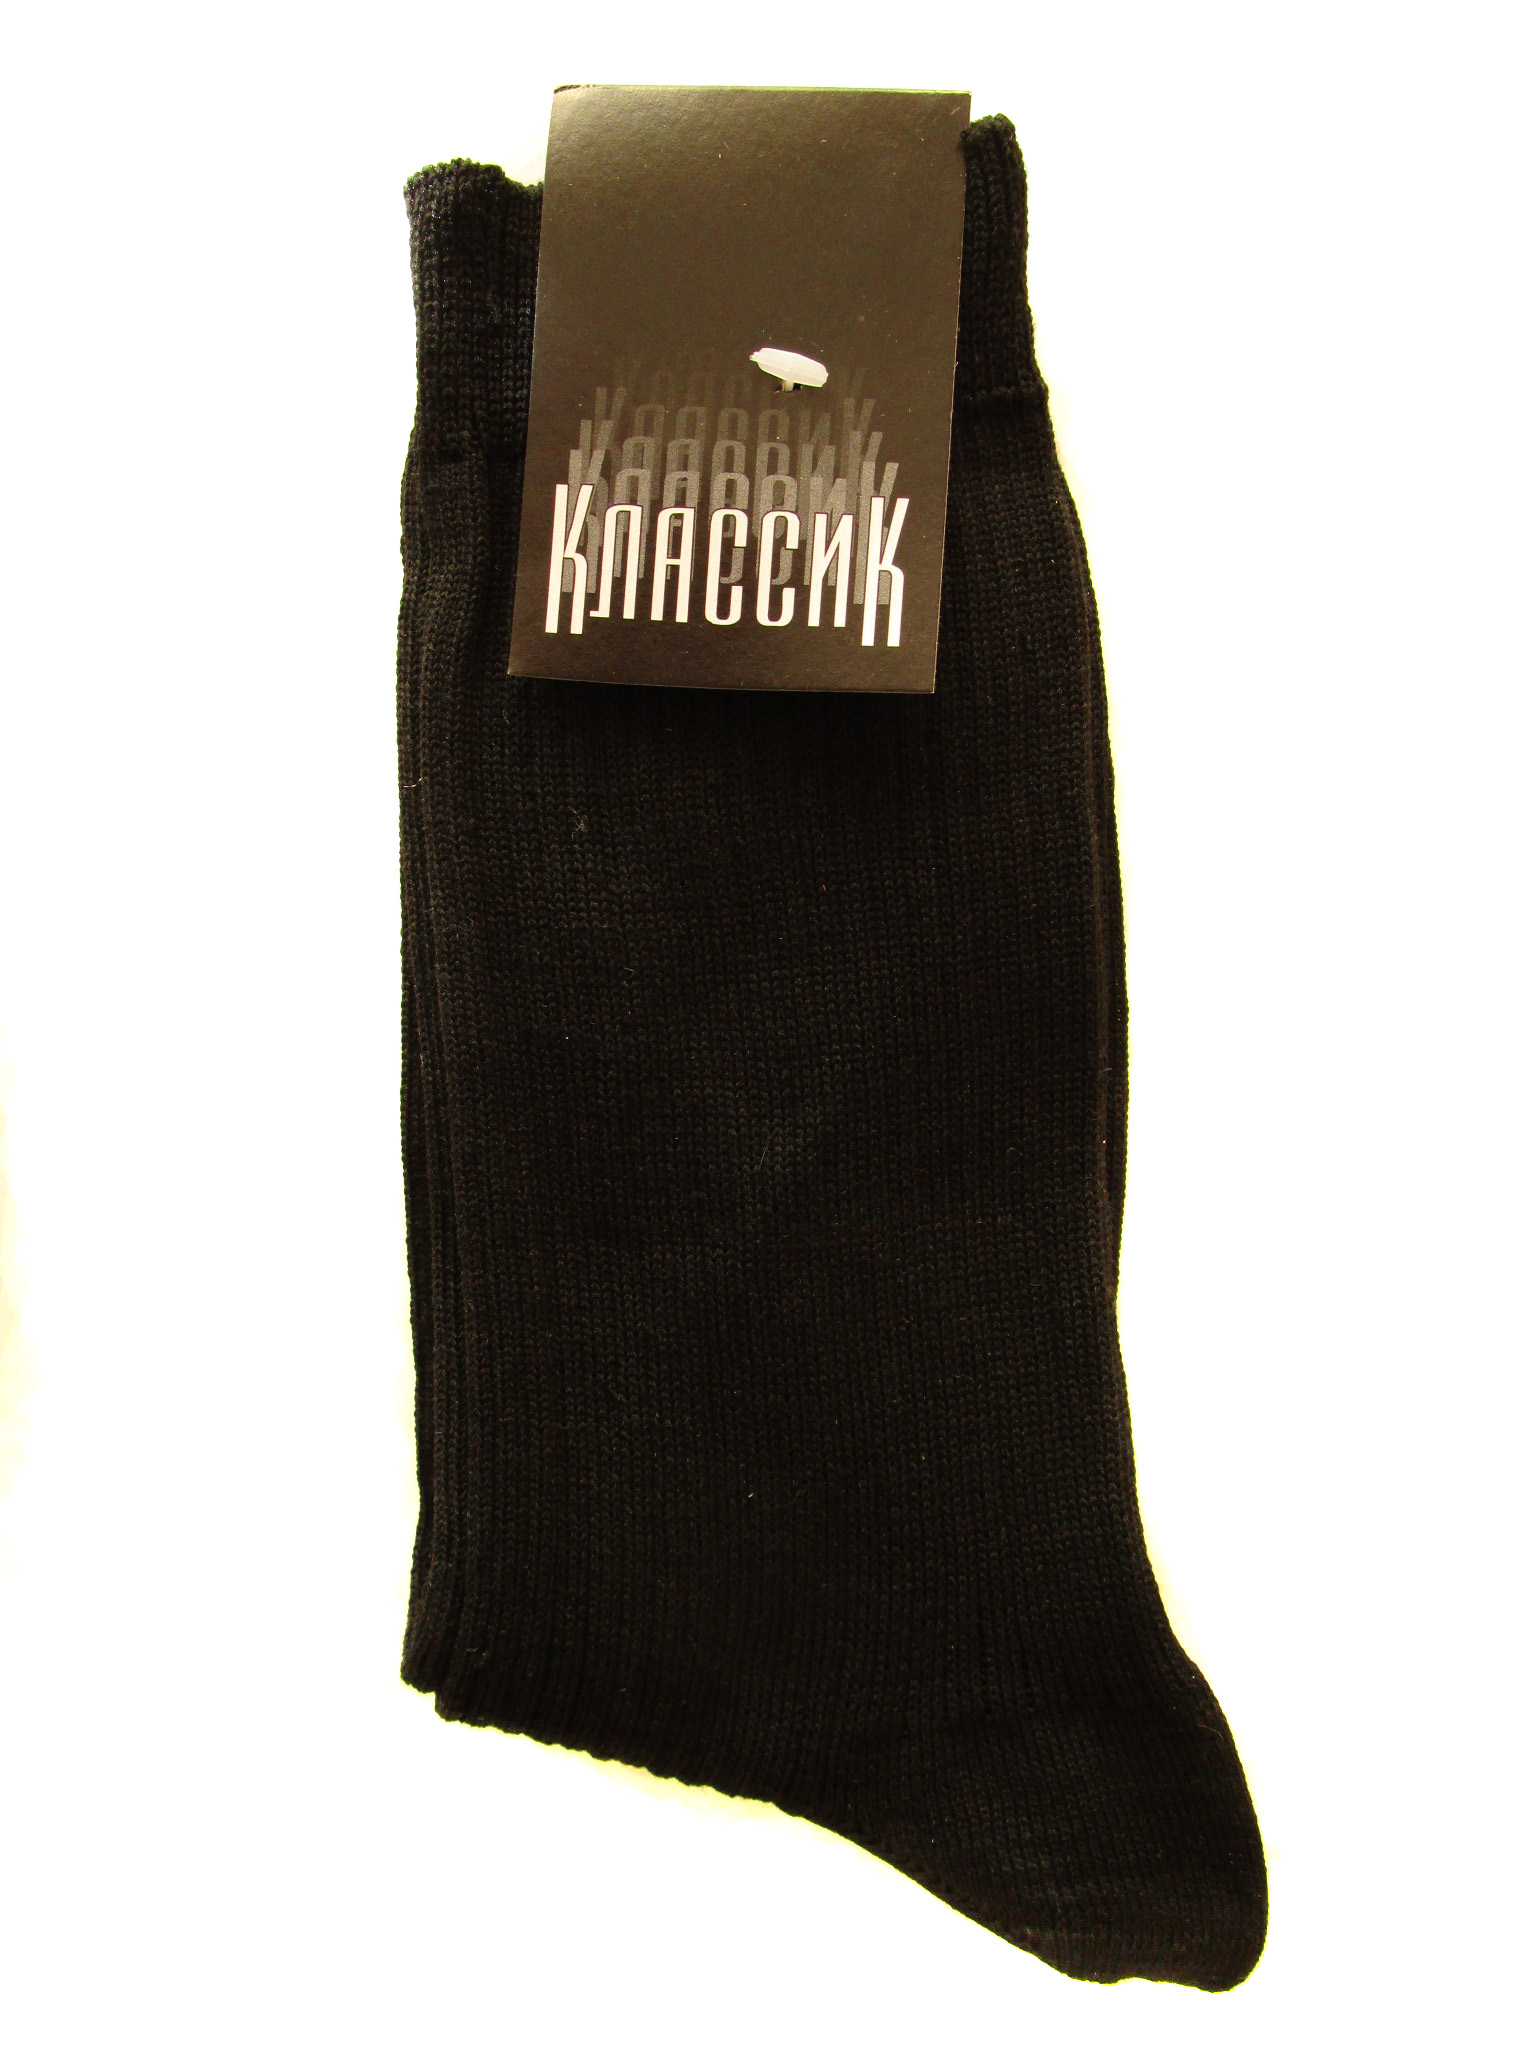 Мужские носки (арт.С-59)